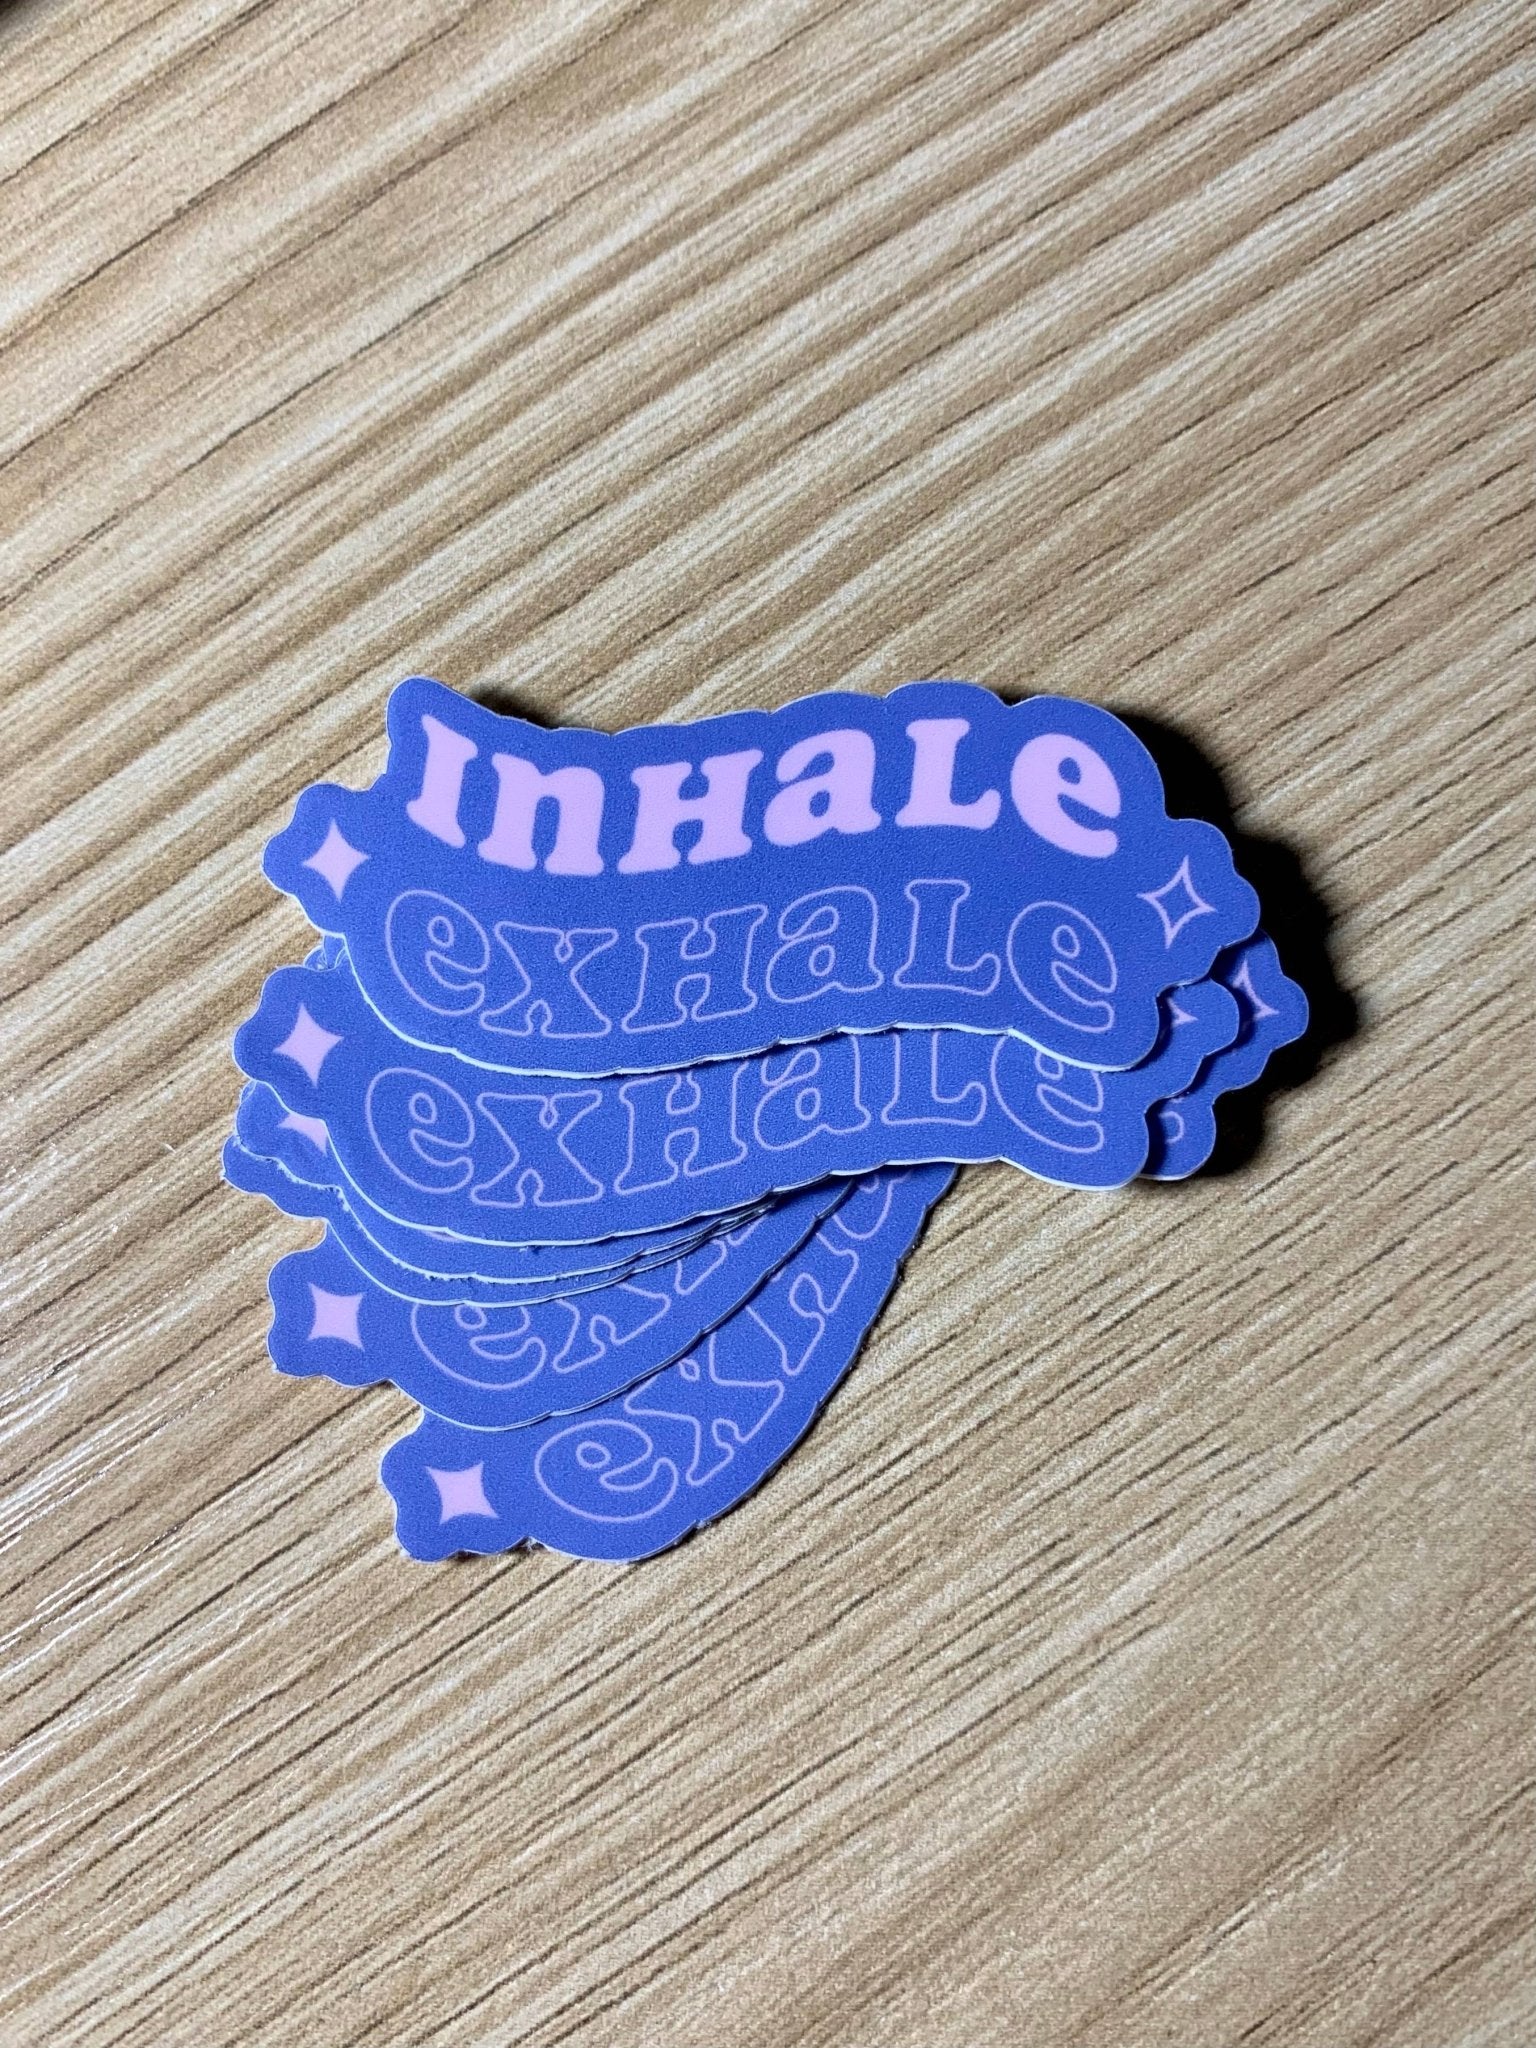 Inhale Exhale Sticker - Rehaus